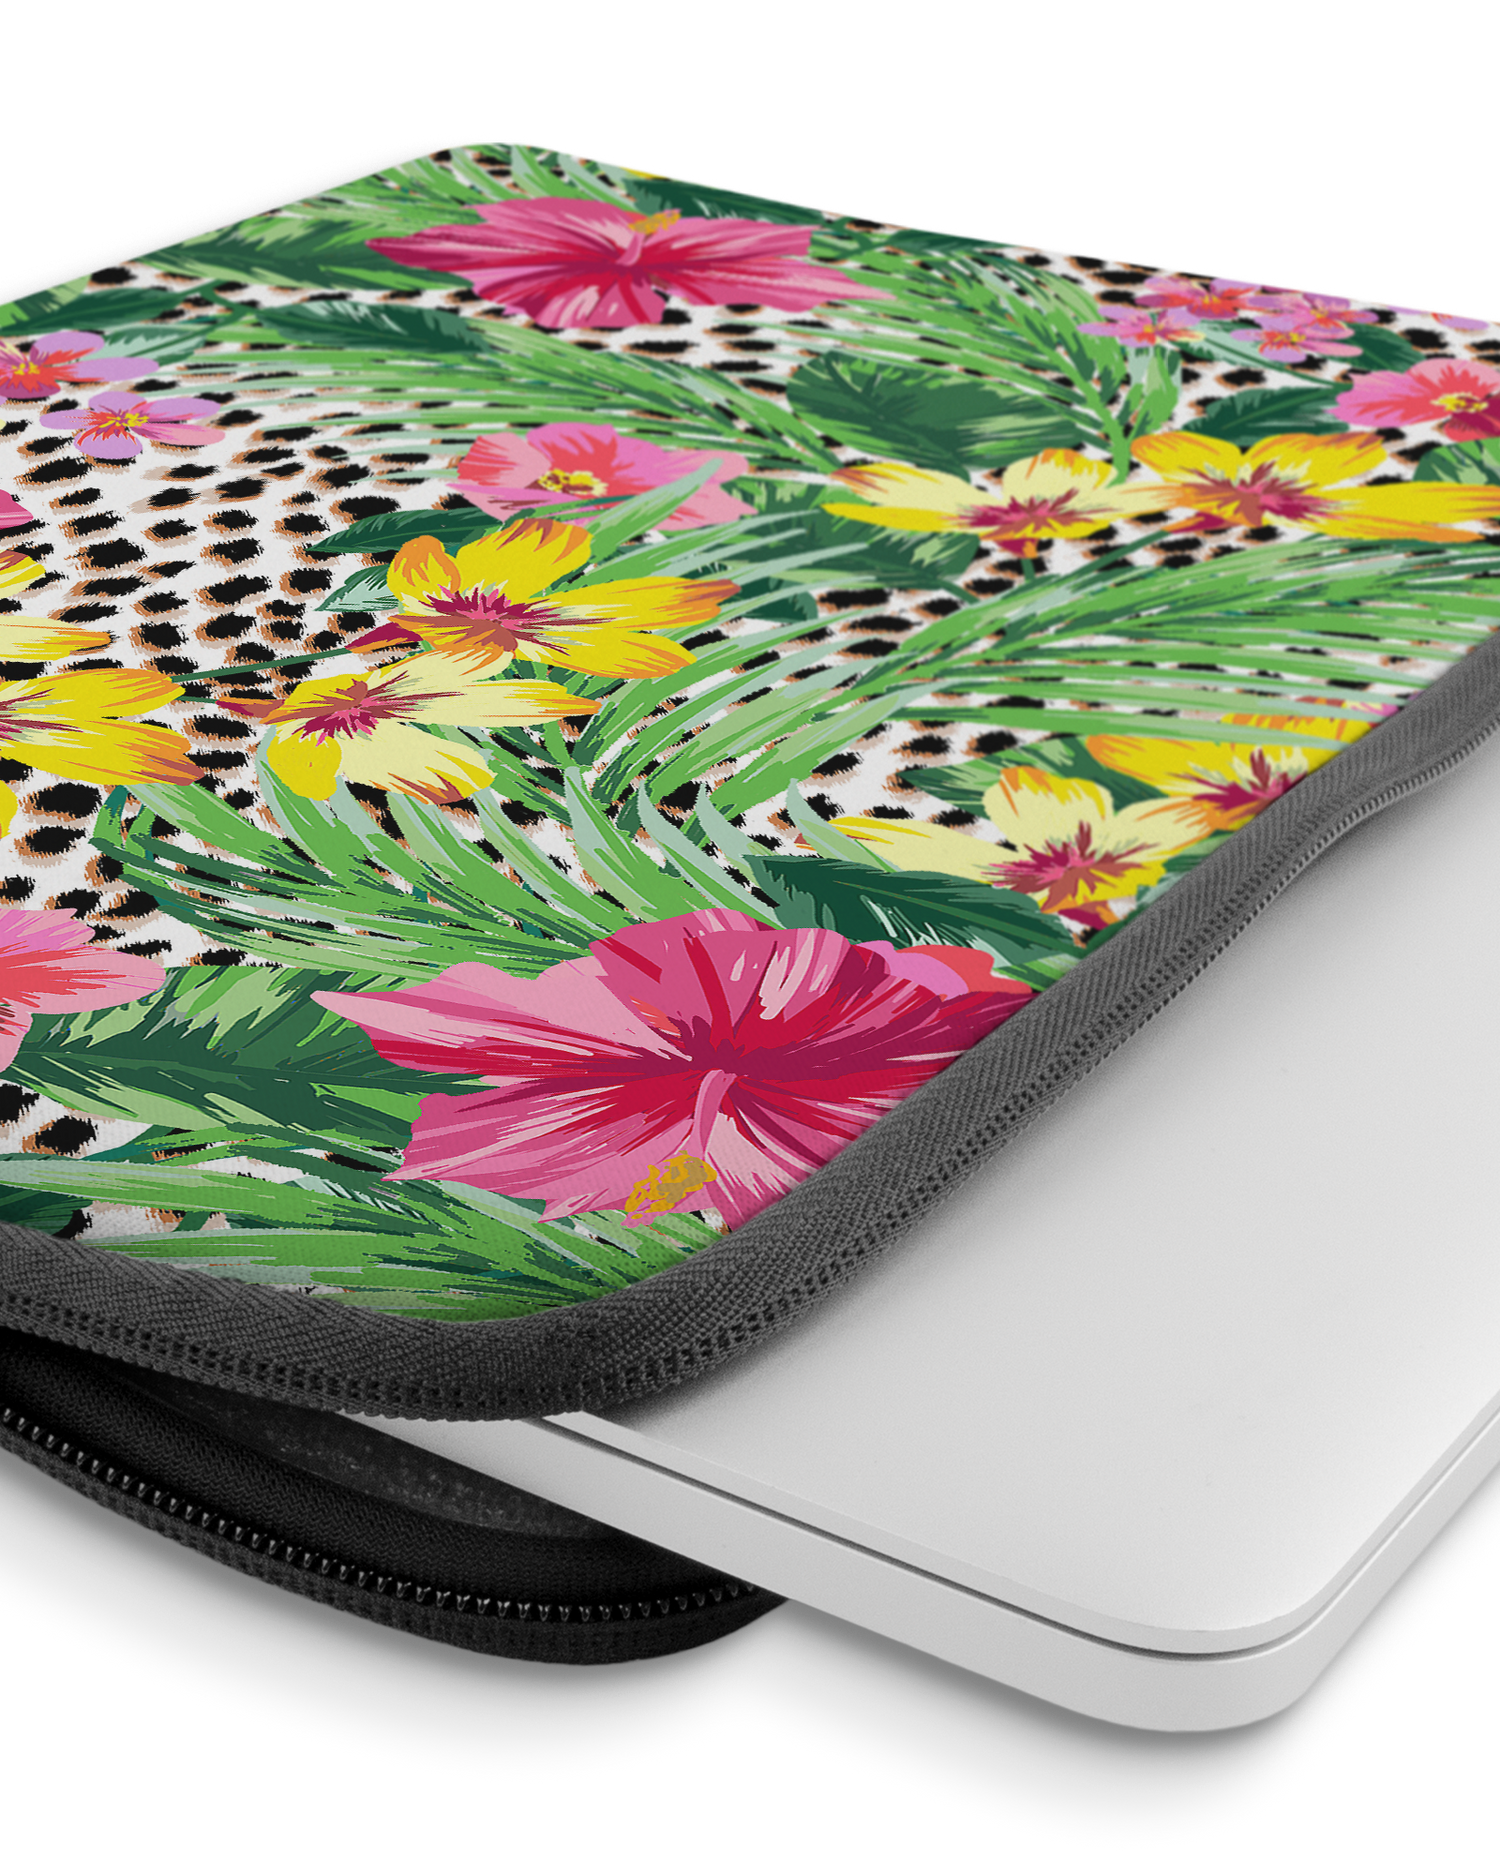 Tropical Cheetah Laptophülle 14 Zoll mit Gerät im Inneren